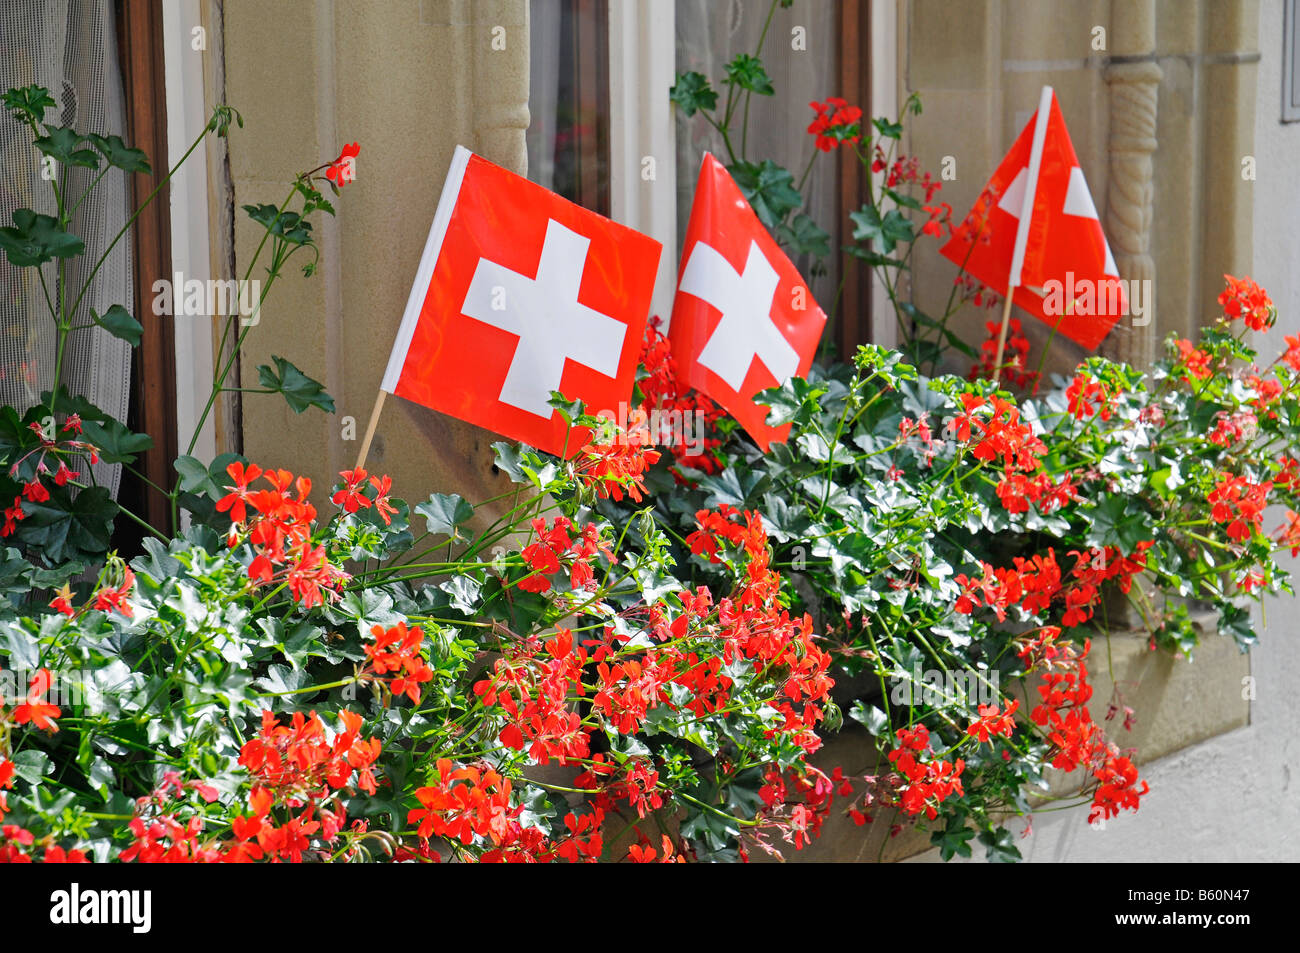 Schweizer Fahnen in Blumenkästen auf einem Fenster Fensterbank, Zofingen,  Aargau, Schweiz, Europa Stockfotografie - Alamy